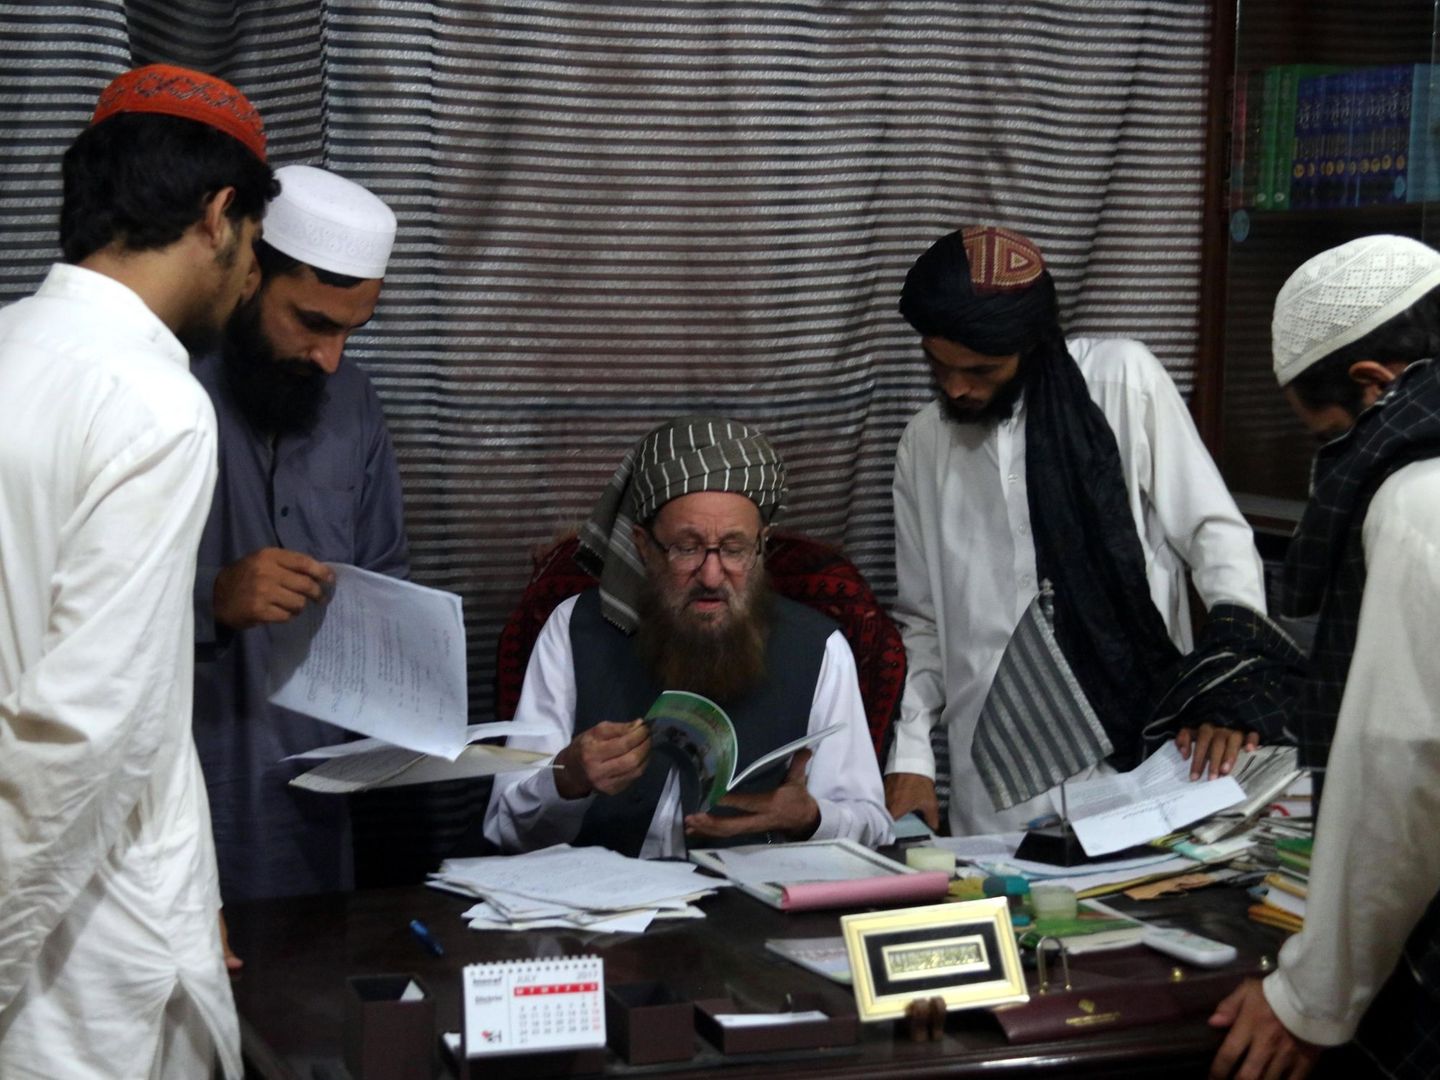 El maulana Sami ul Haq enseña un libro a unos estudiantes en la madrasa Darul Uloom Haqqania, bautizada como la 'universidad de la yihad' de los talibanes. (EFE)